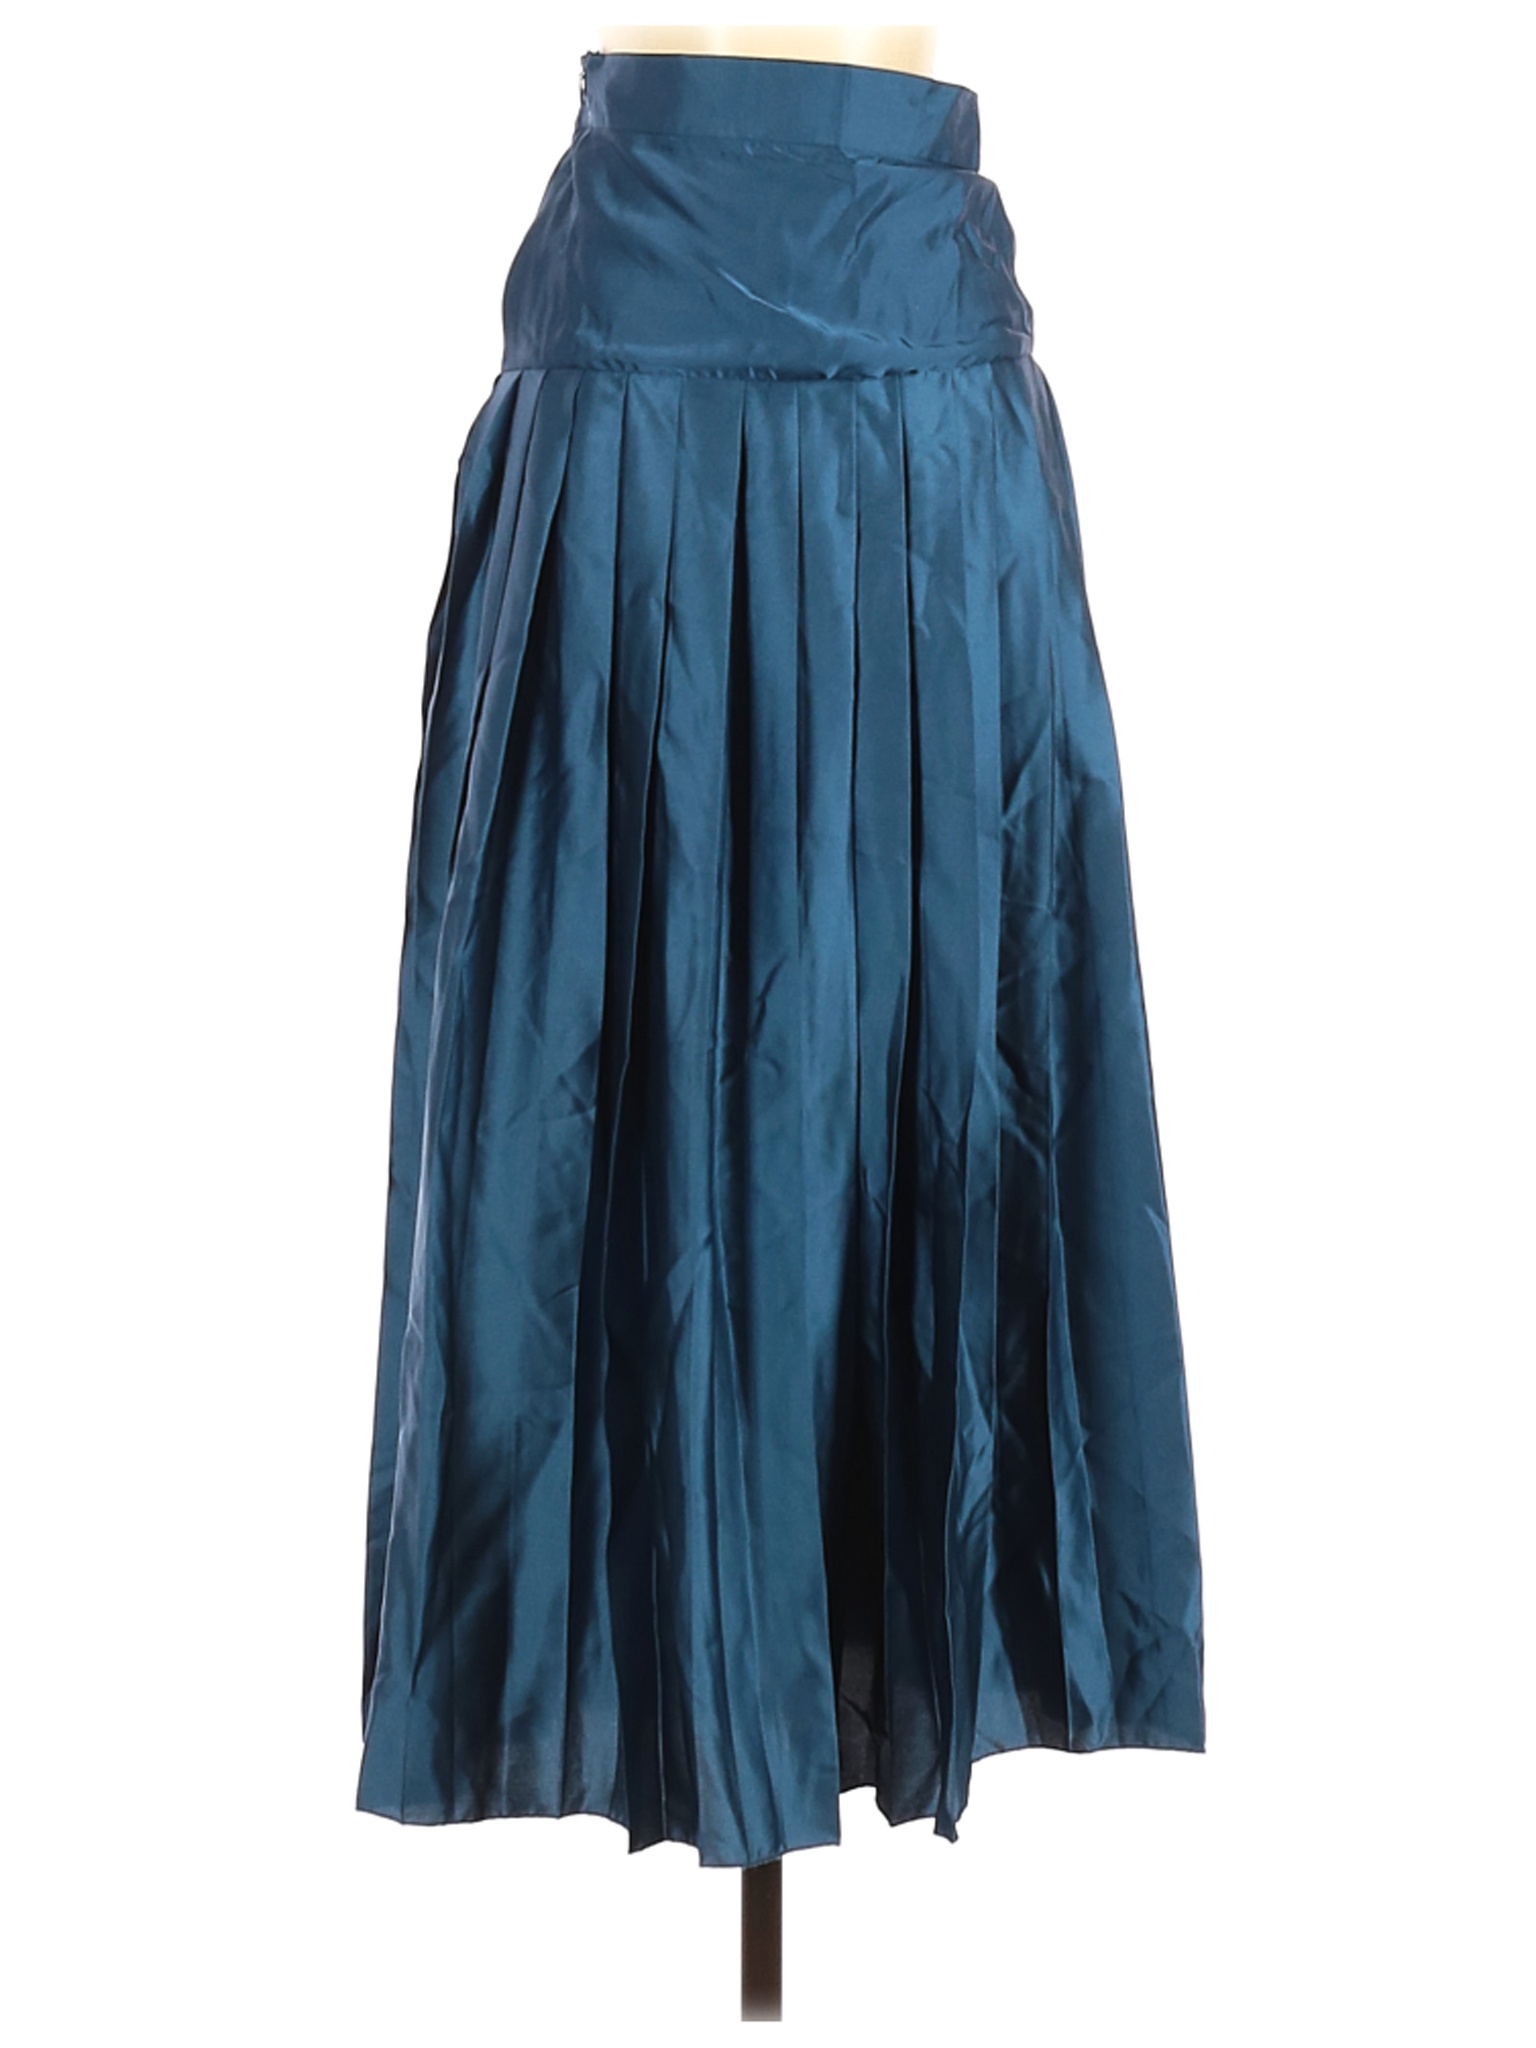 Shein Women Green Casual Skirt XS | eBay